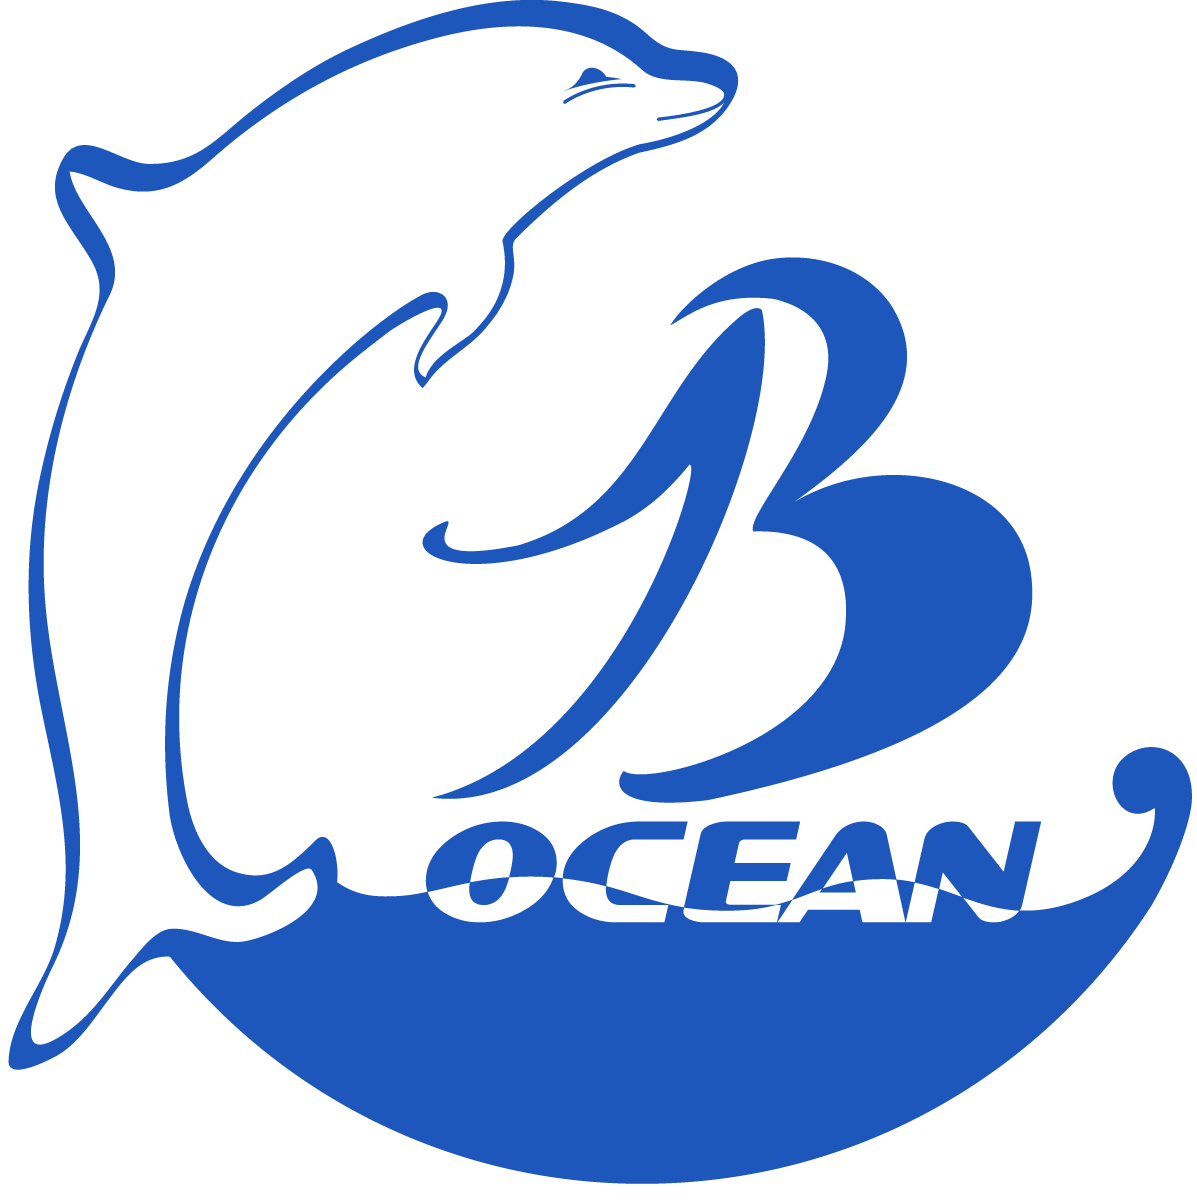 Logo Công ty Cổ phần Vận tải biển Biển Xanh